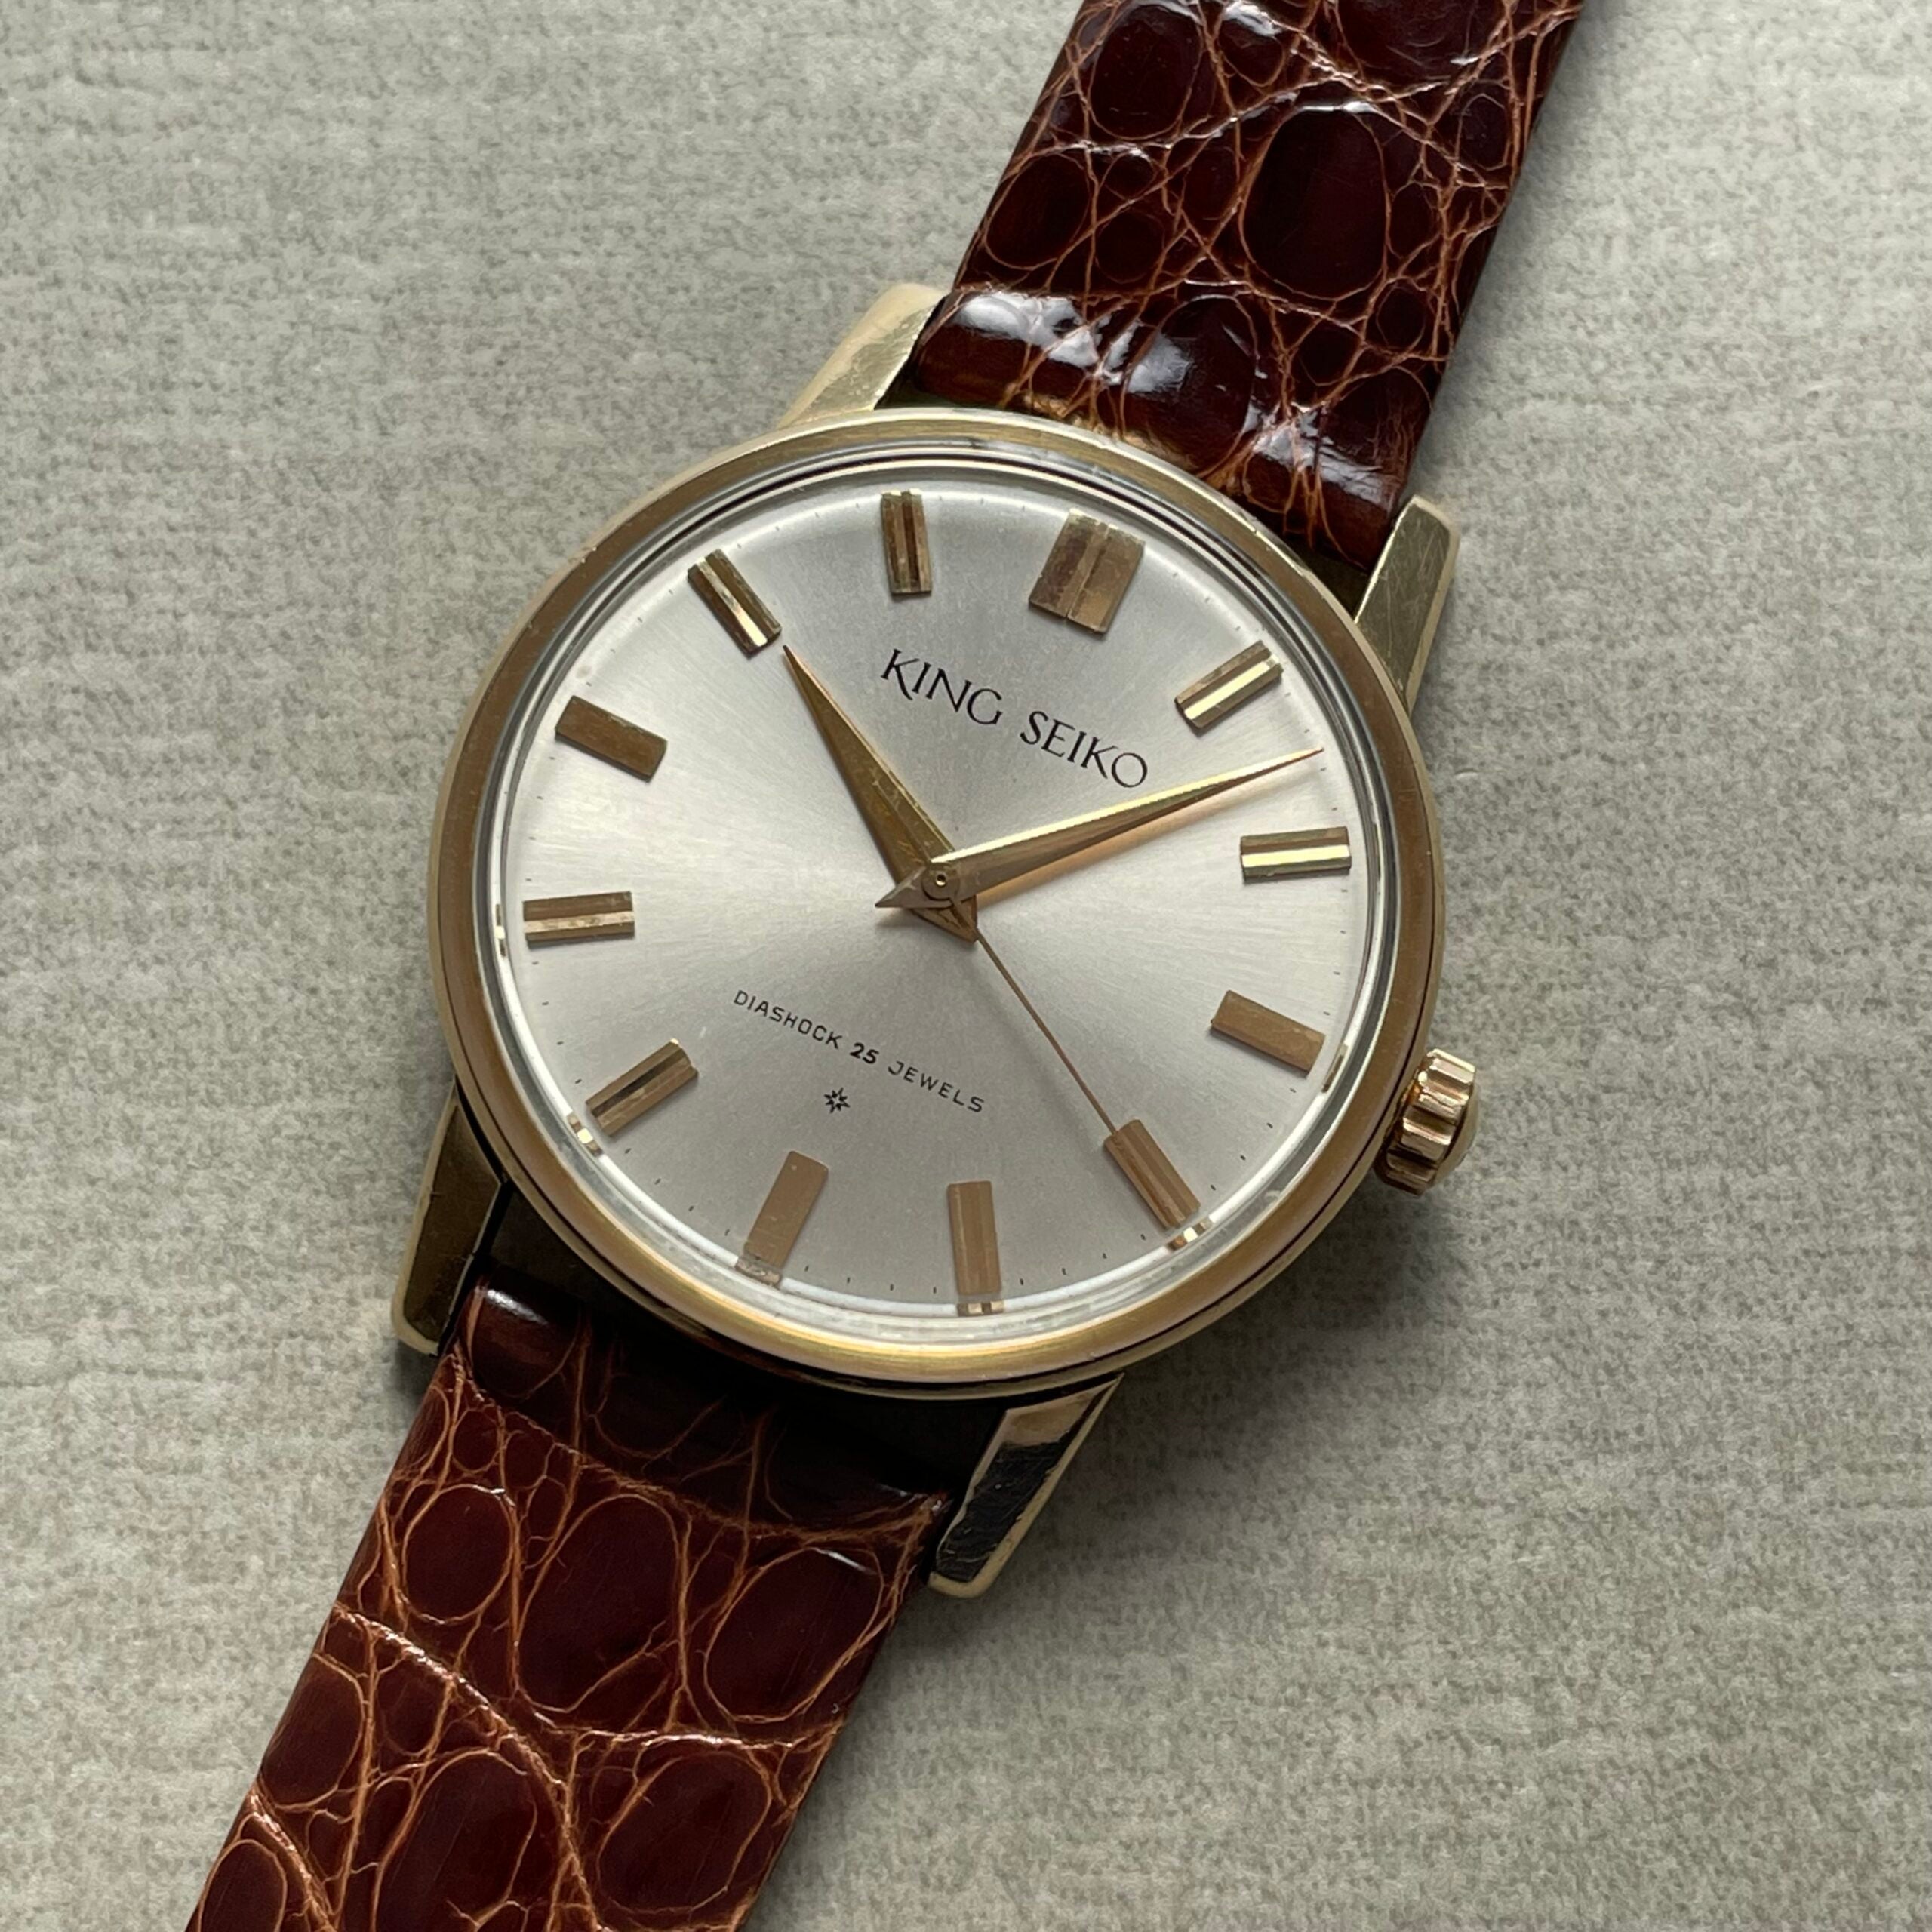 SEIKO】キングセイコー1st前期SDダイヤル – REGALO vintage watch